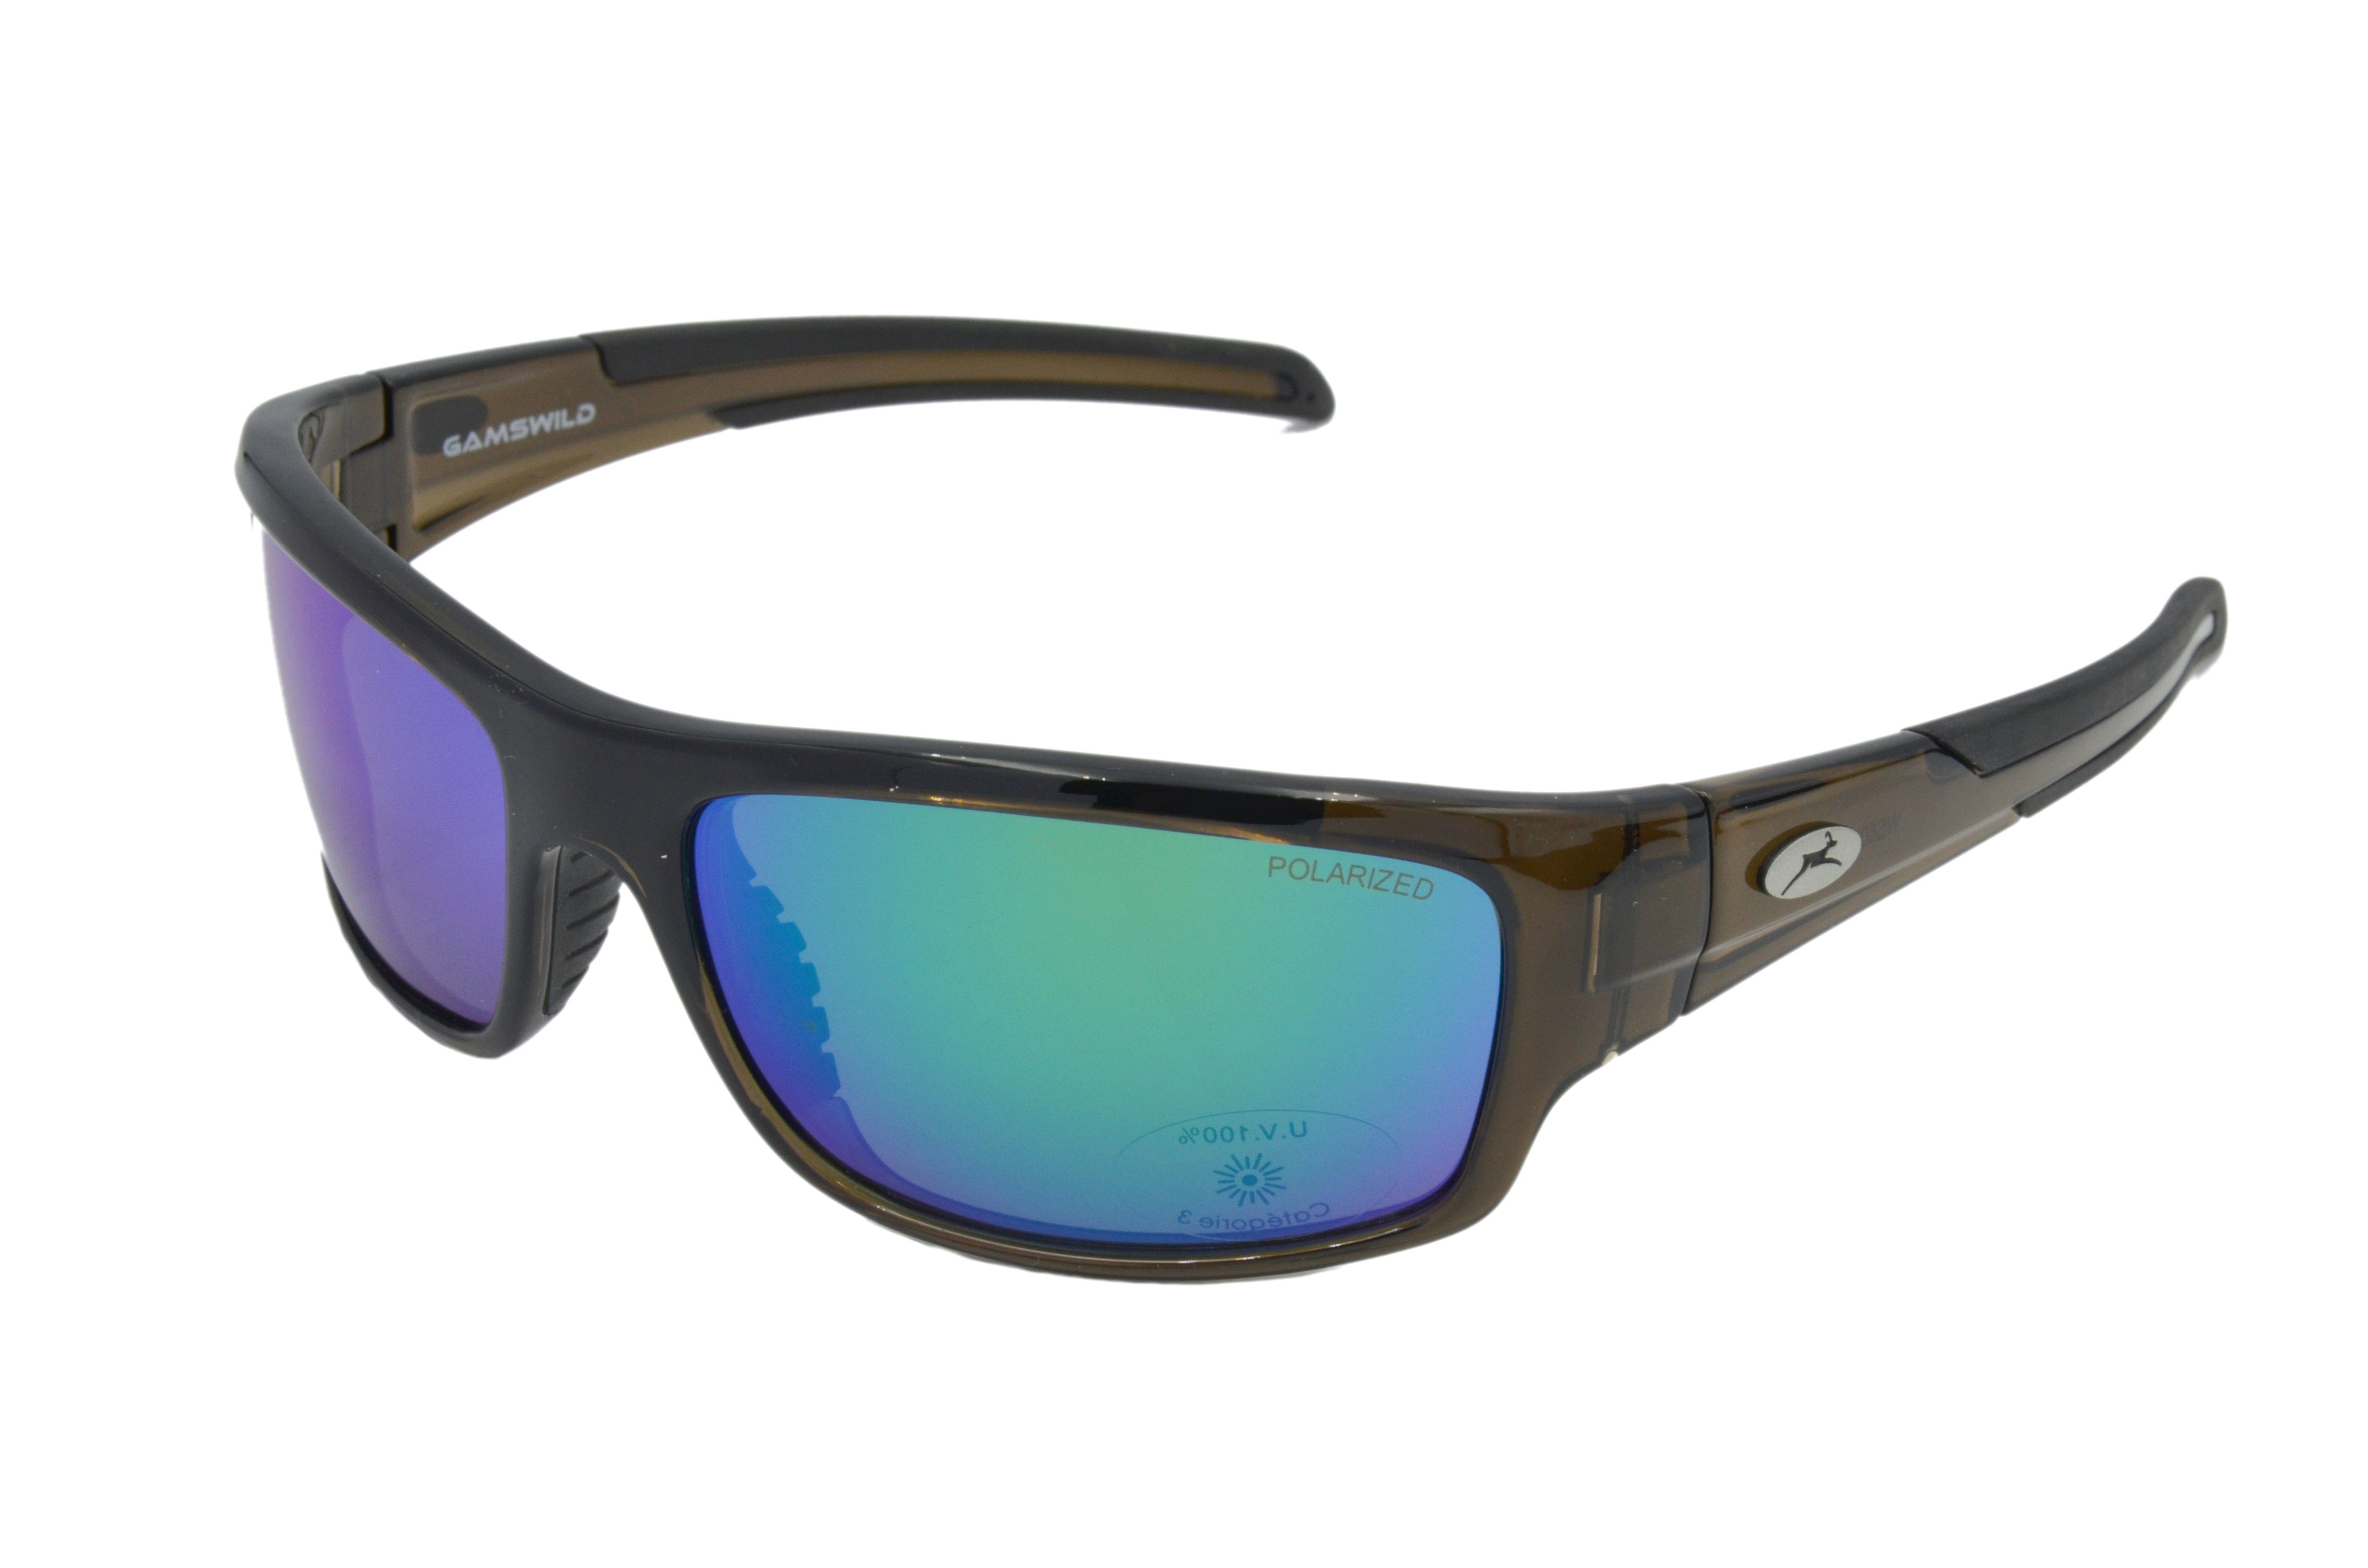 Gamswild Sportbrille WS6034 Sportbrille Sonnenbrille Fahrradbrille Skibrille Damen Herren, polarisierte Gläser, grün-türkis, blau, grau, schwarz, braun